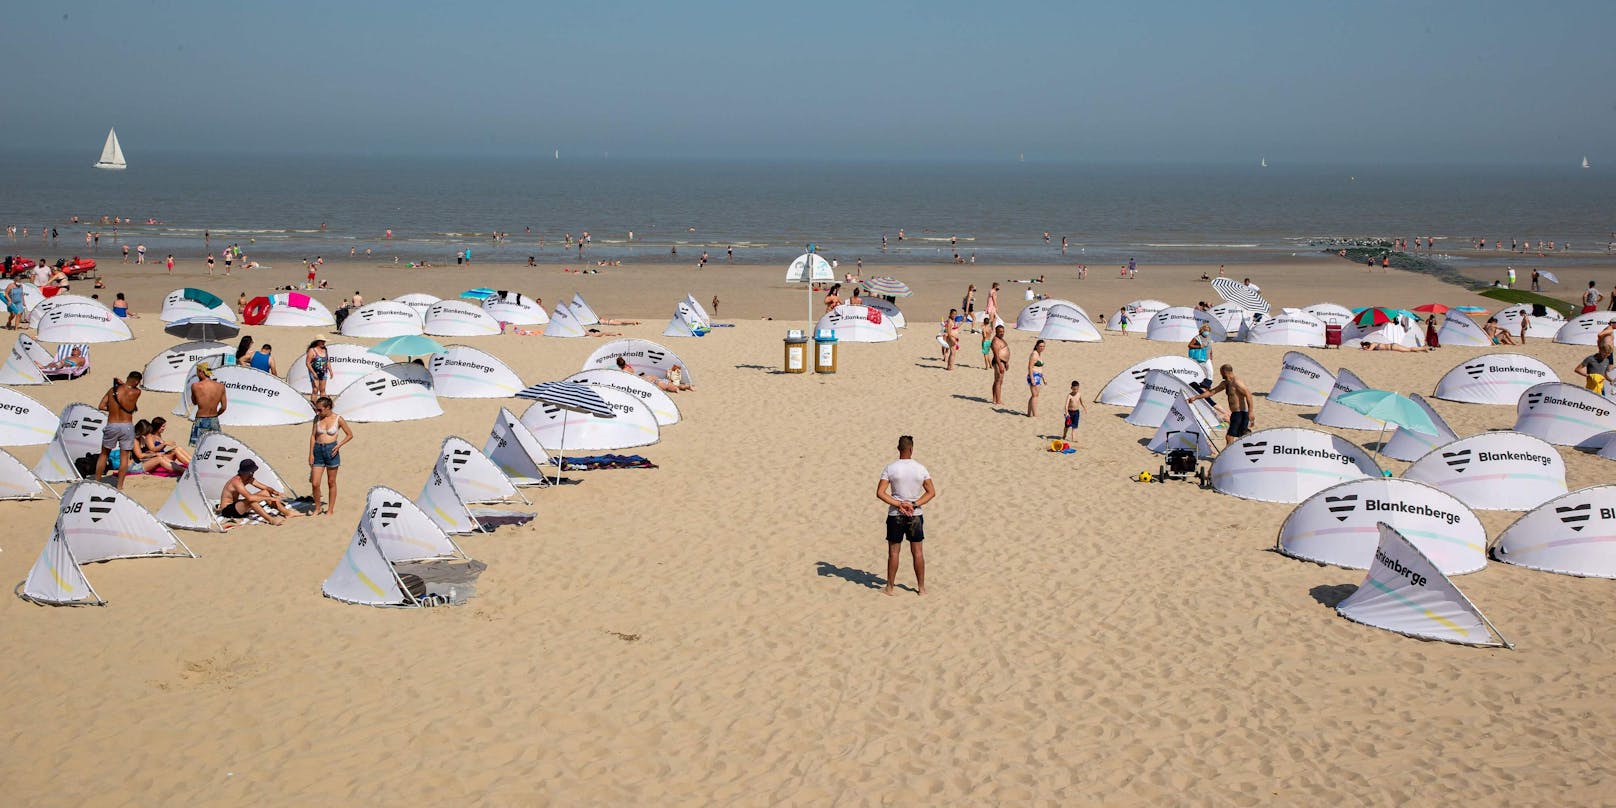 Sicherheitsabstand eingehalten: So geht ein Strandbesuch in Blankenberge (9. August 2020)